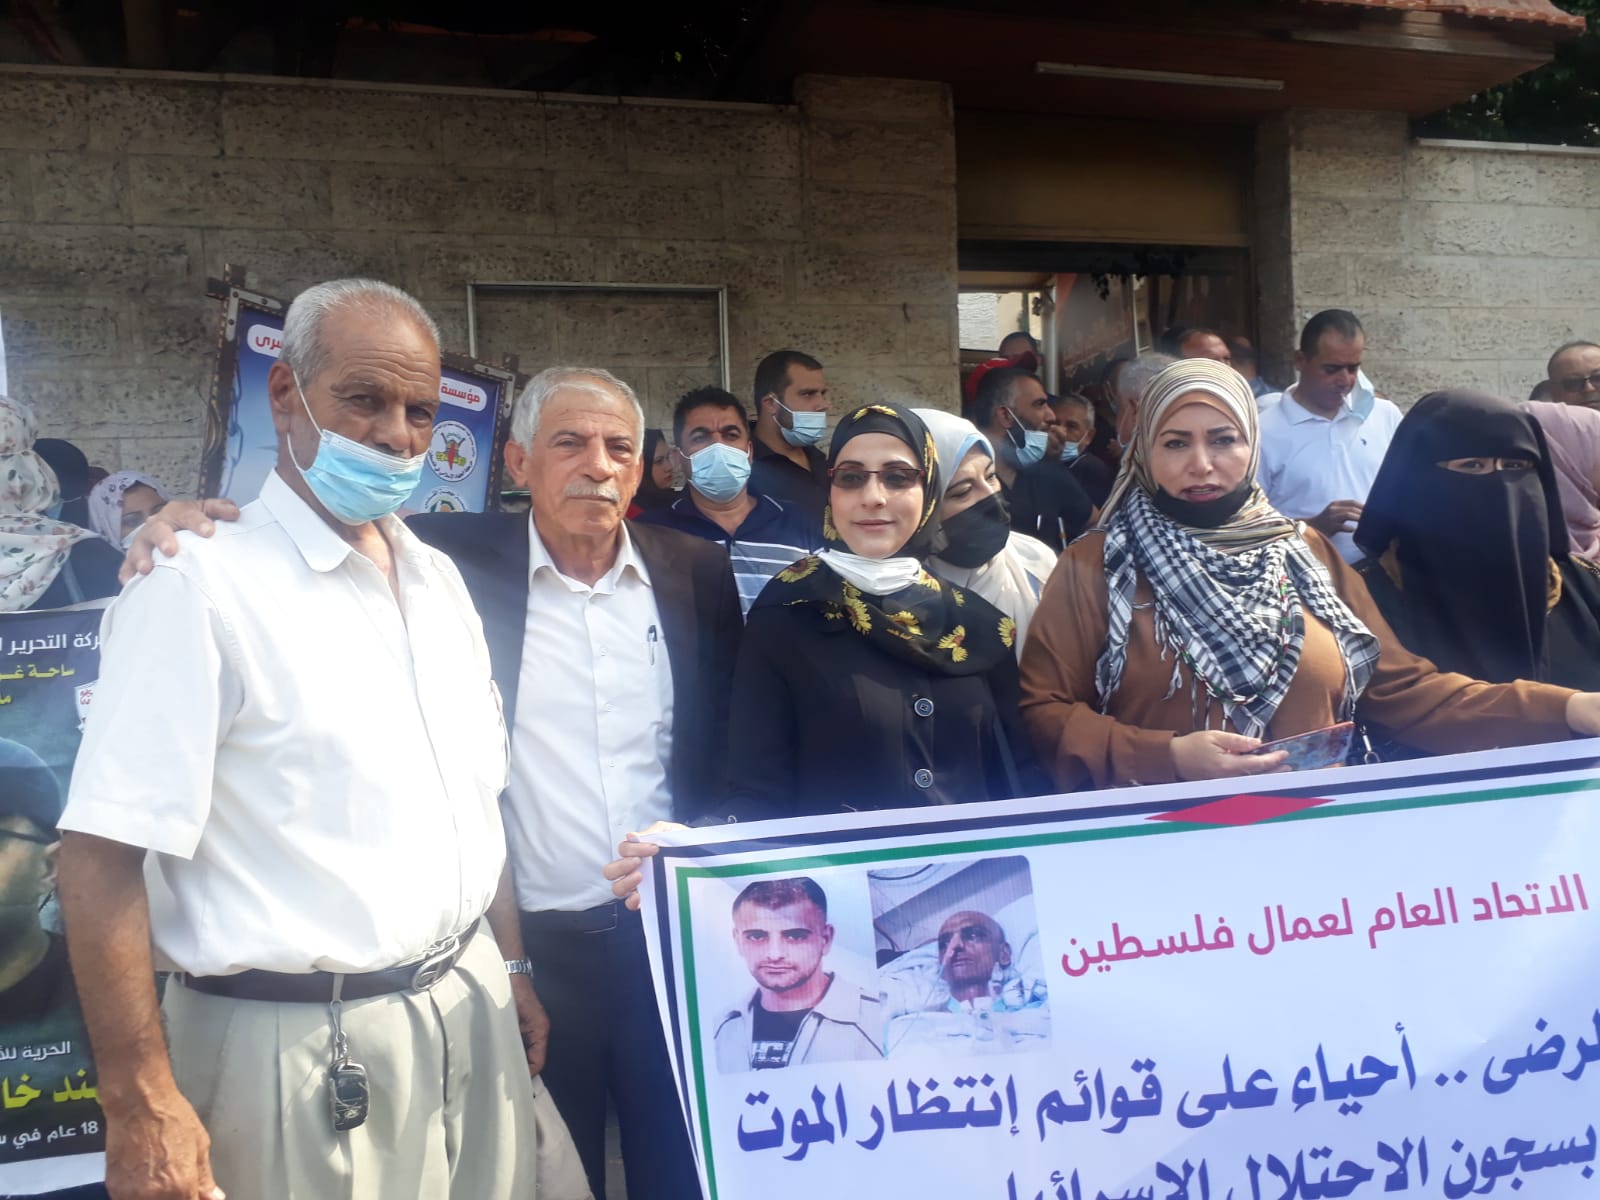 غزة: الاتحاد العام لعمال فلسطين يطالب بالضغط على الاحتلال للافراج عن جميع الأسرى من السجون 